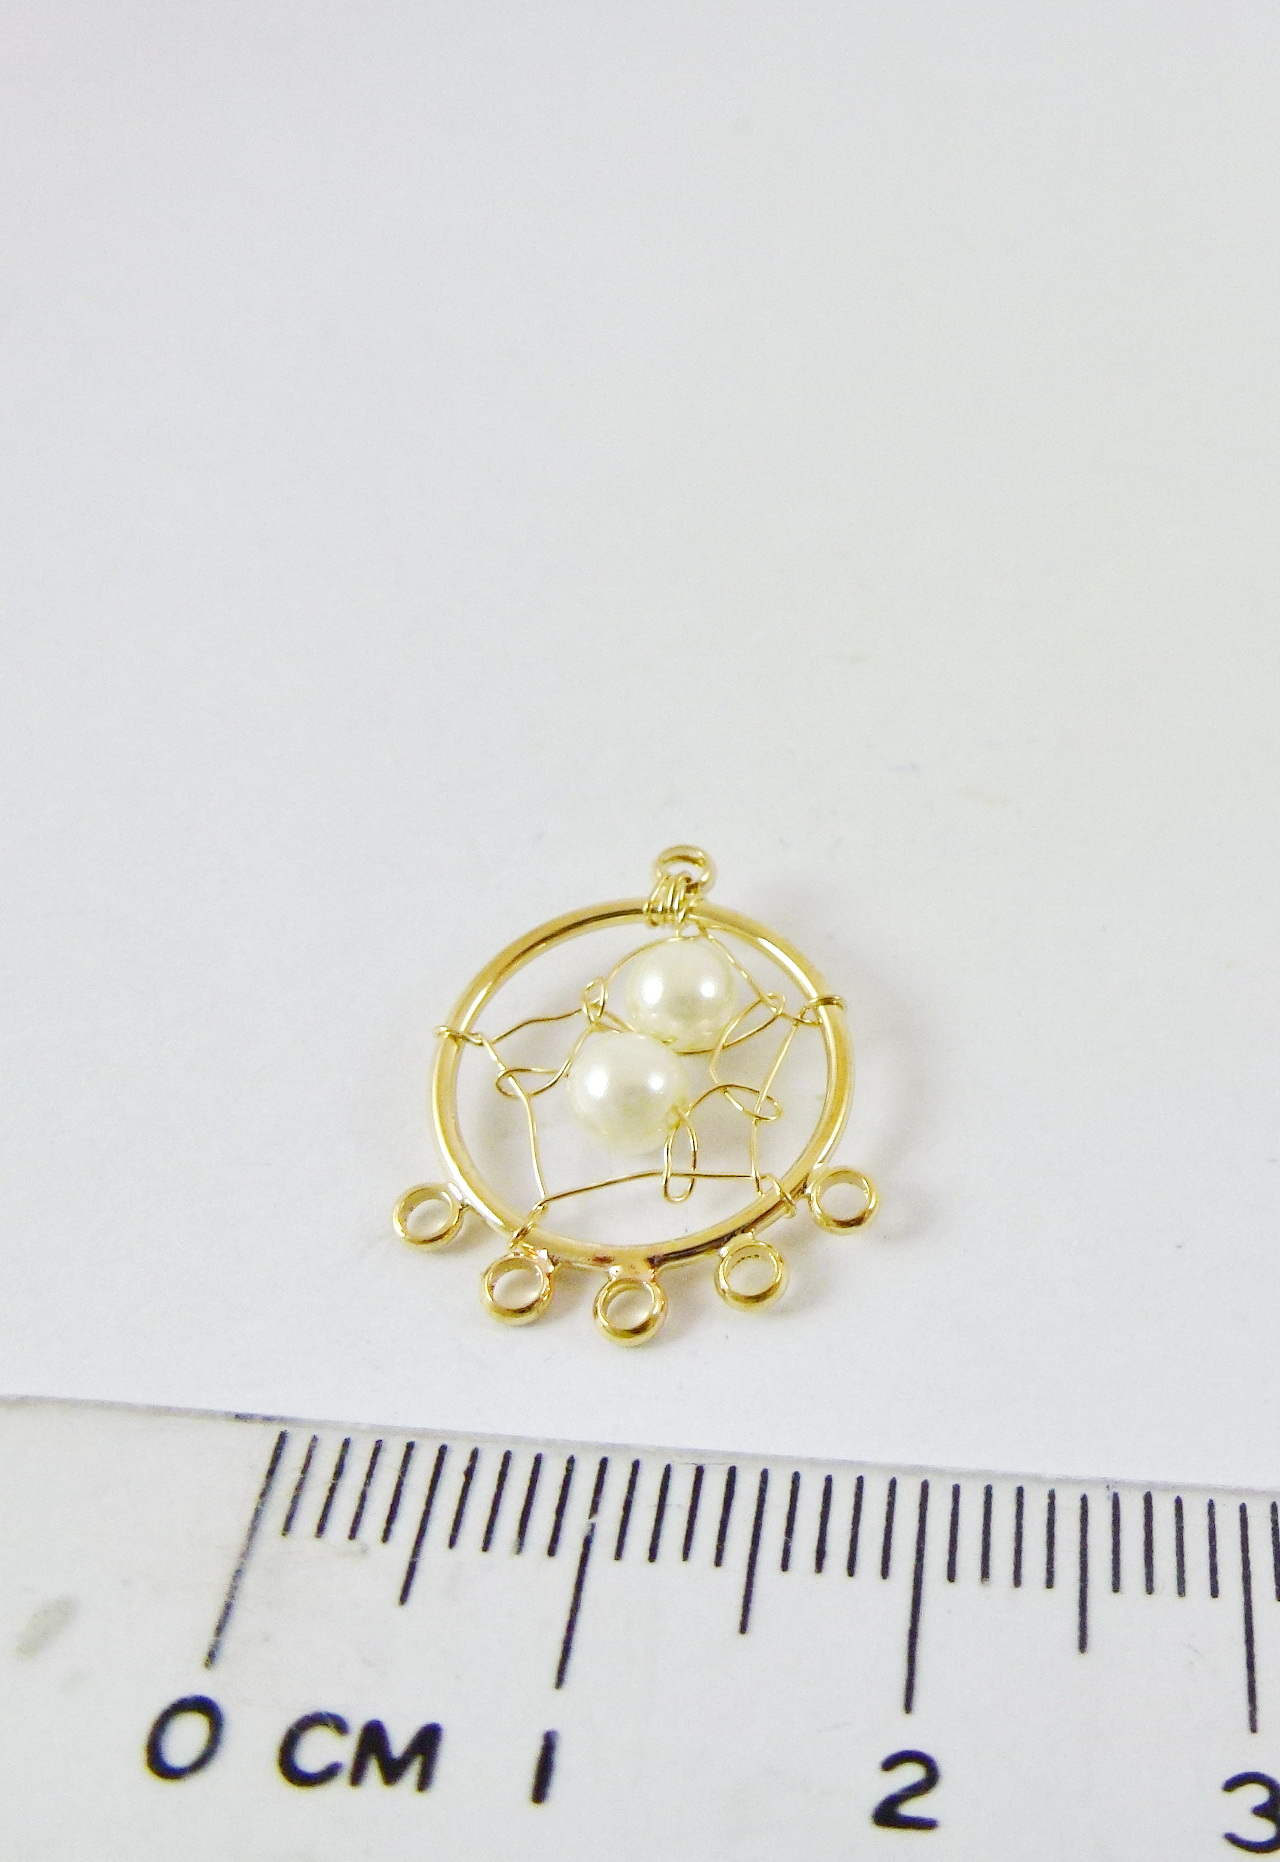 15mm銅鍍金色六孔圓形補夢網-珍珠